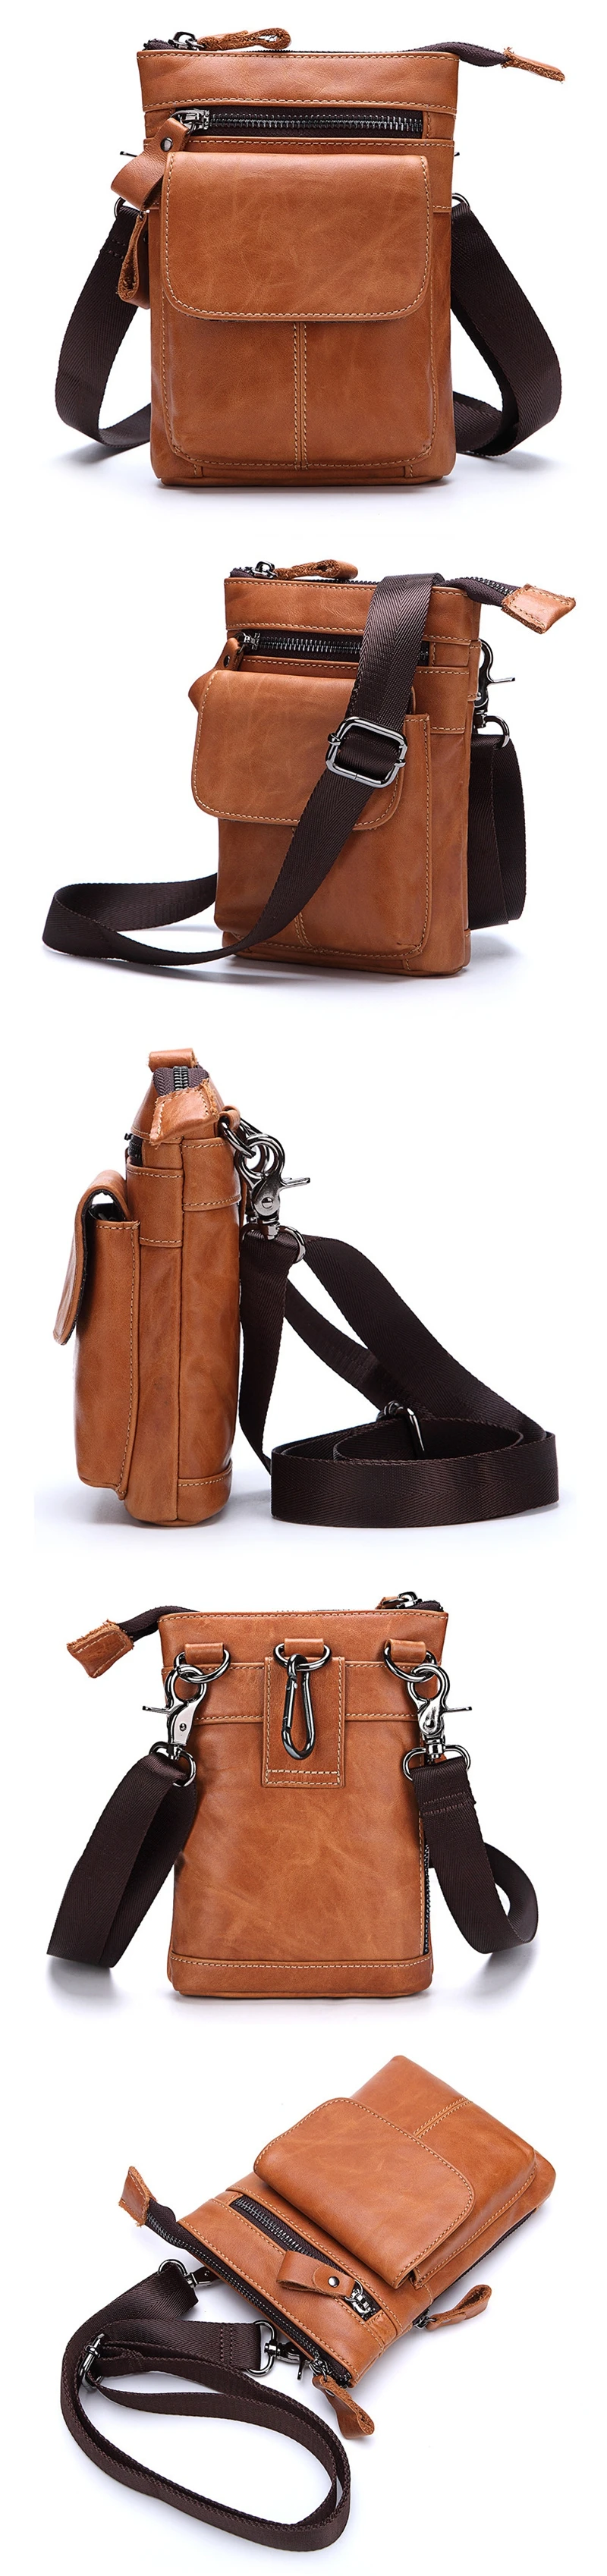 Натуральная кожа Для мужчин Путешествия Fanny Pack шлевки Hip сумка кошелек телефонные чехлы Винтаж Для мужчин сумка сумки через плечо